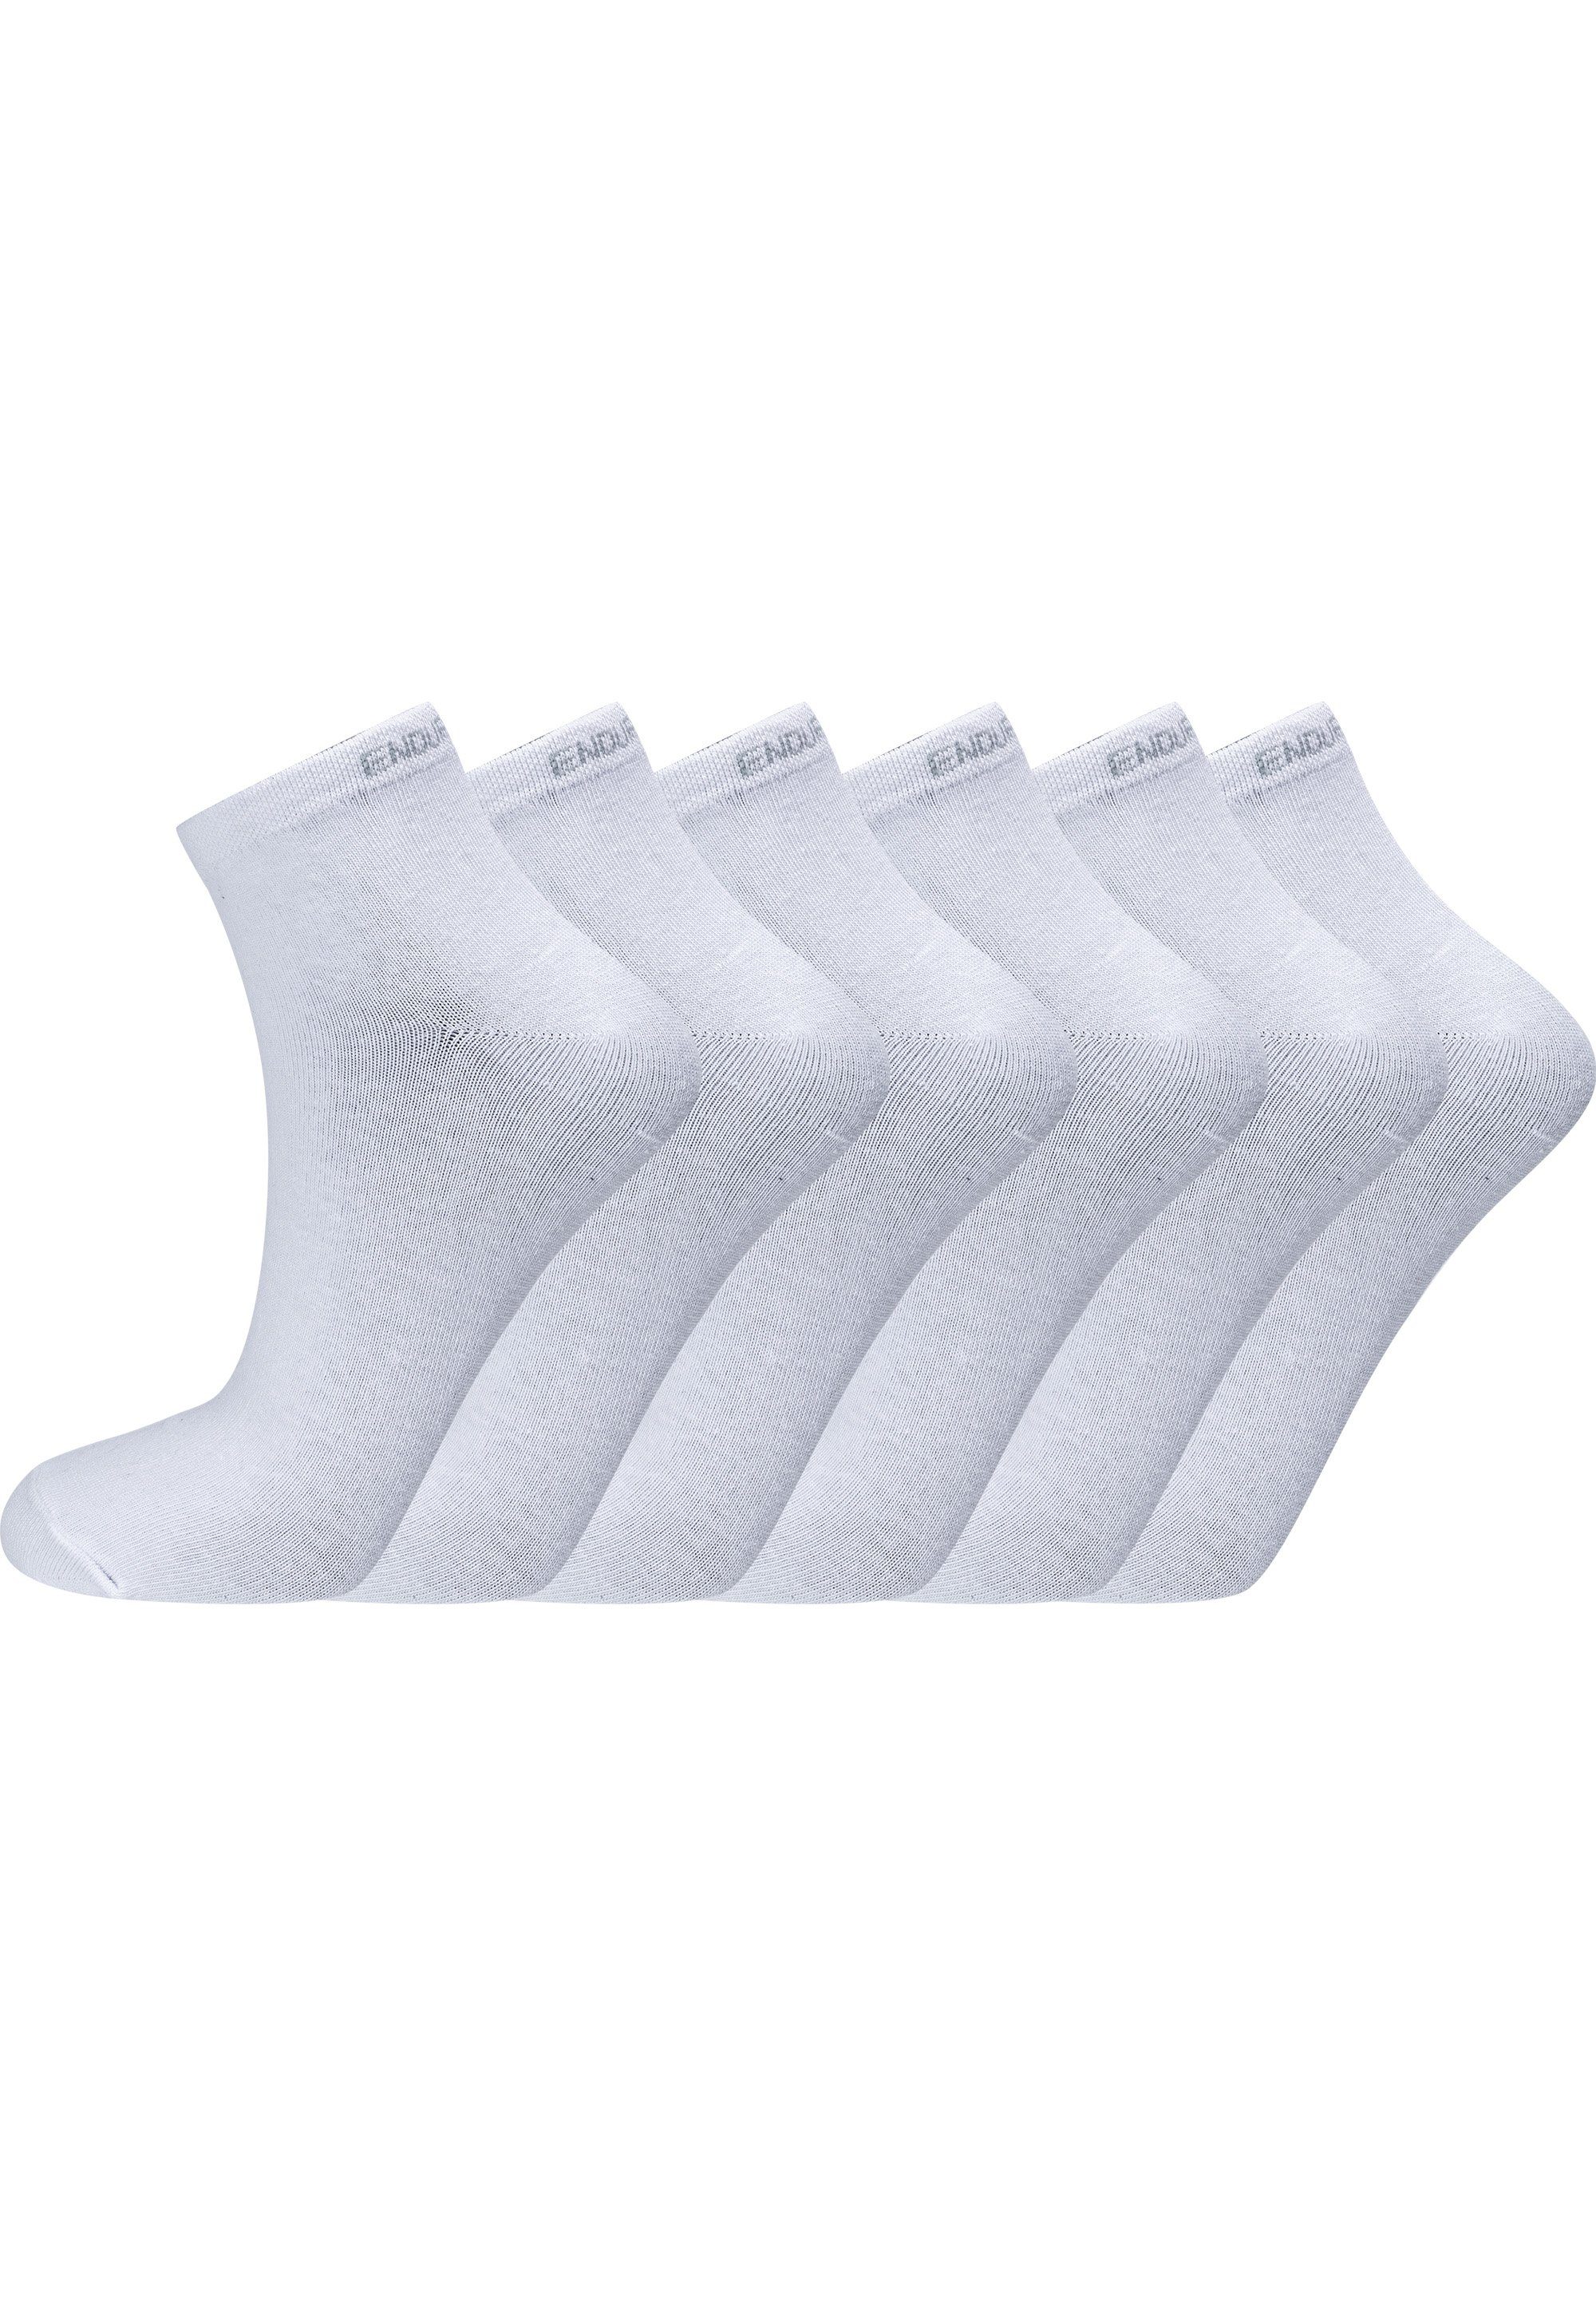 Socken mit Ibi (6-Paar) hohem sehr ENDURANCE weiß Baumwolle-Anteil